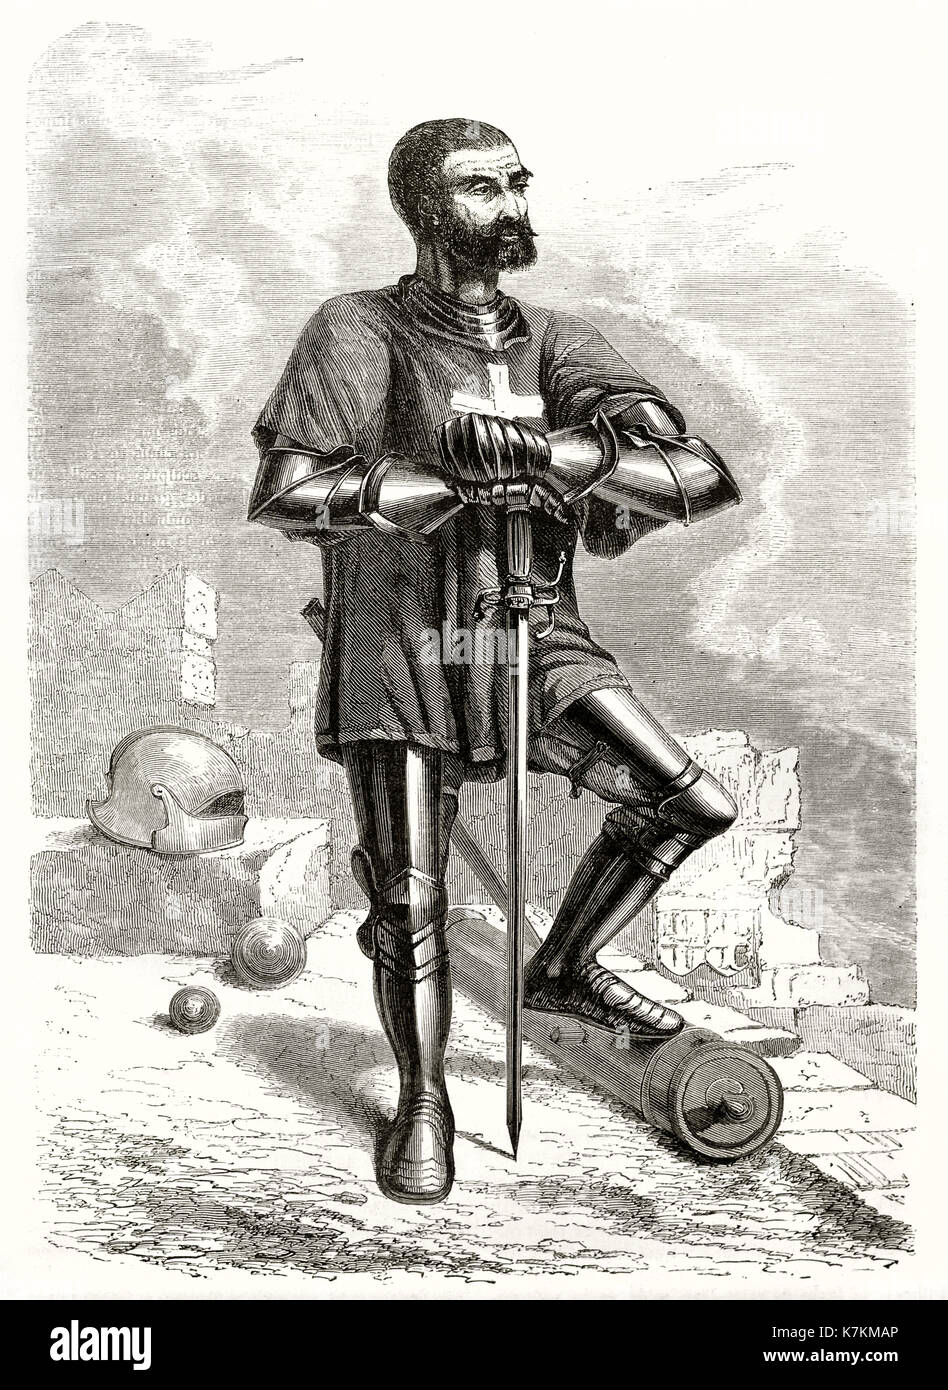 Vieille illustration représentant un chevalier de Rhodes. Par Pannemaker, publ. sur le Tour du Monde, Paris, 1862 Banque D'Images